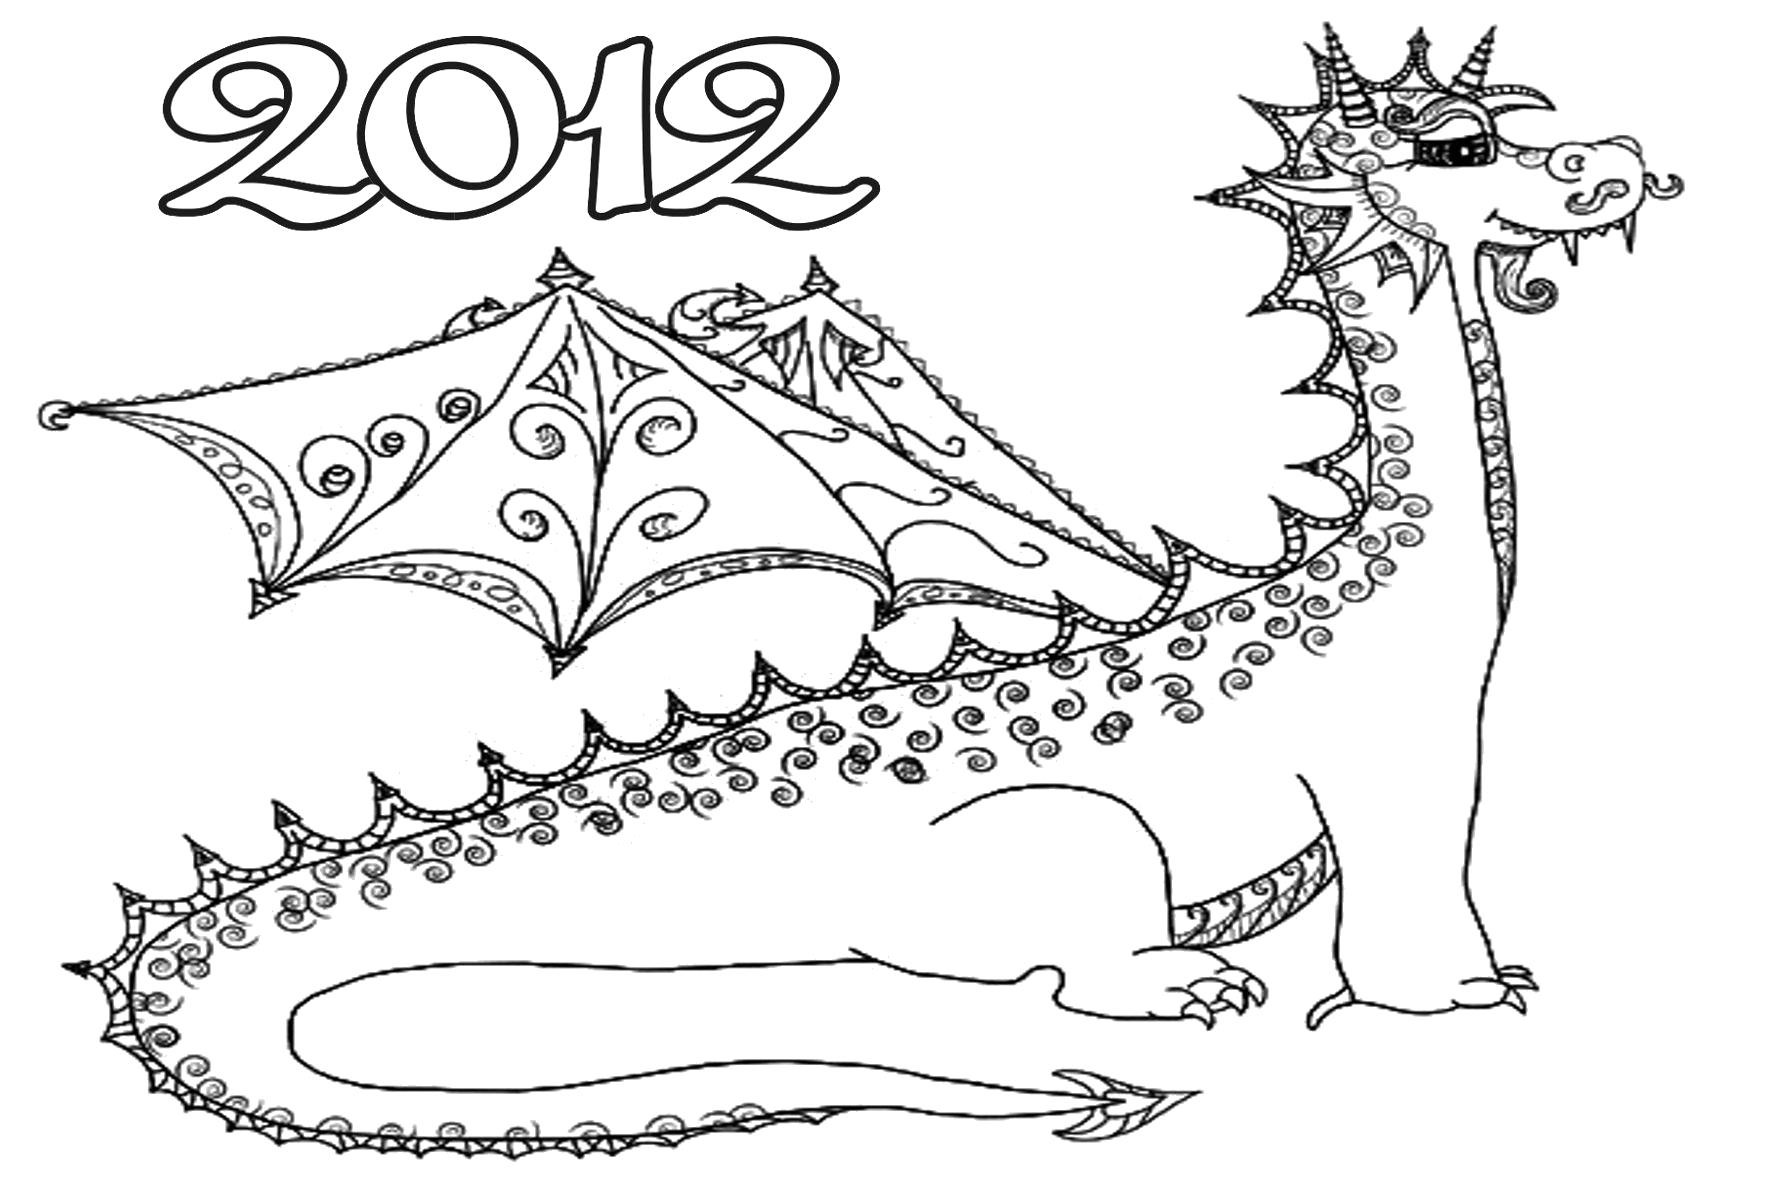 Раскраска  дракон 2012. Скачать дракон.  Распечатать мифические существа